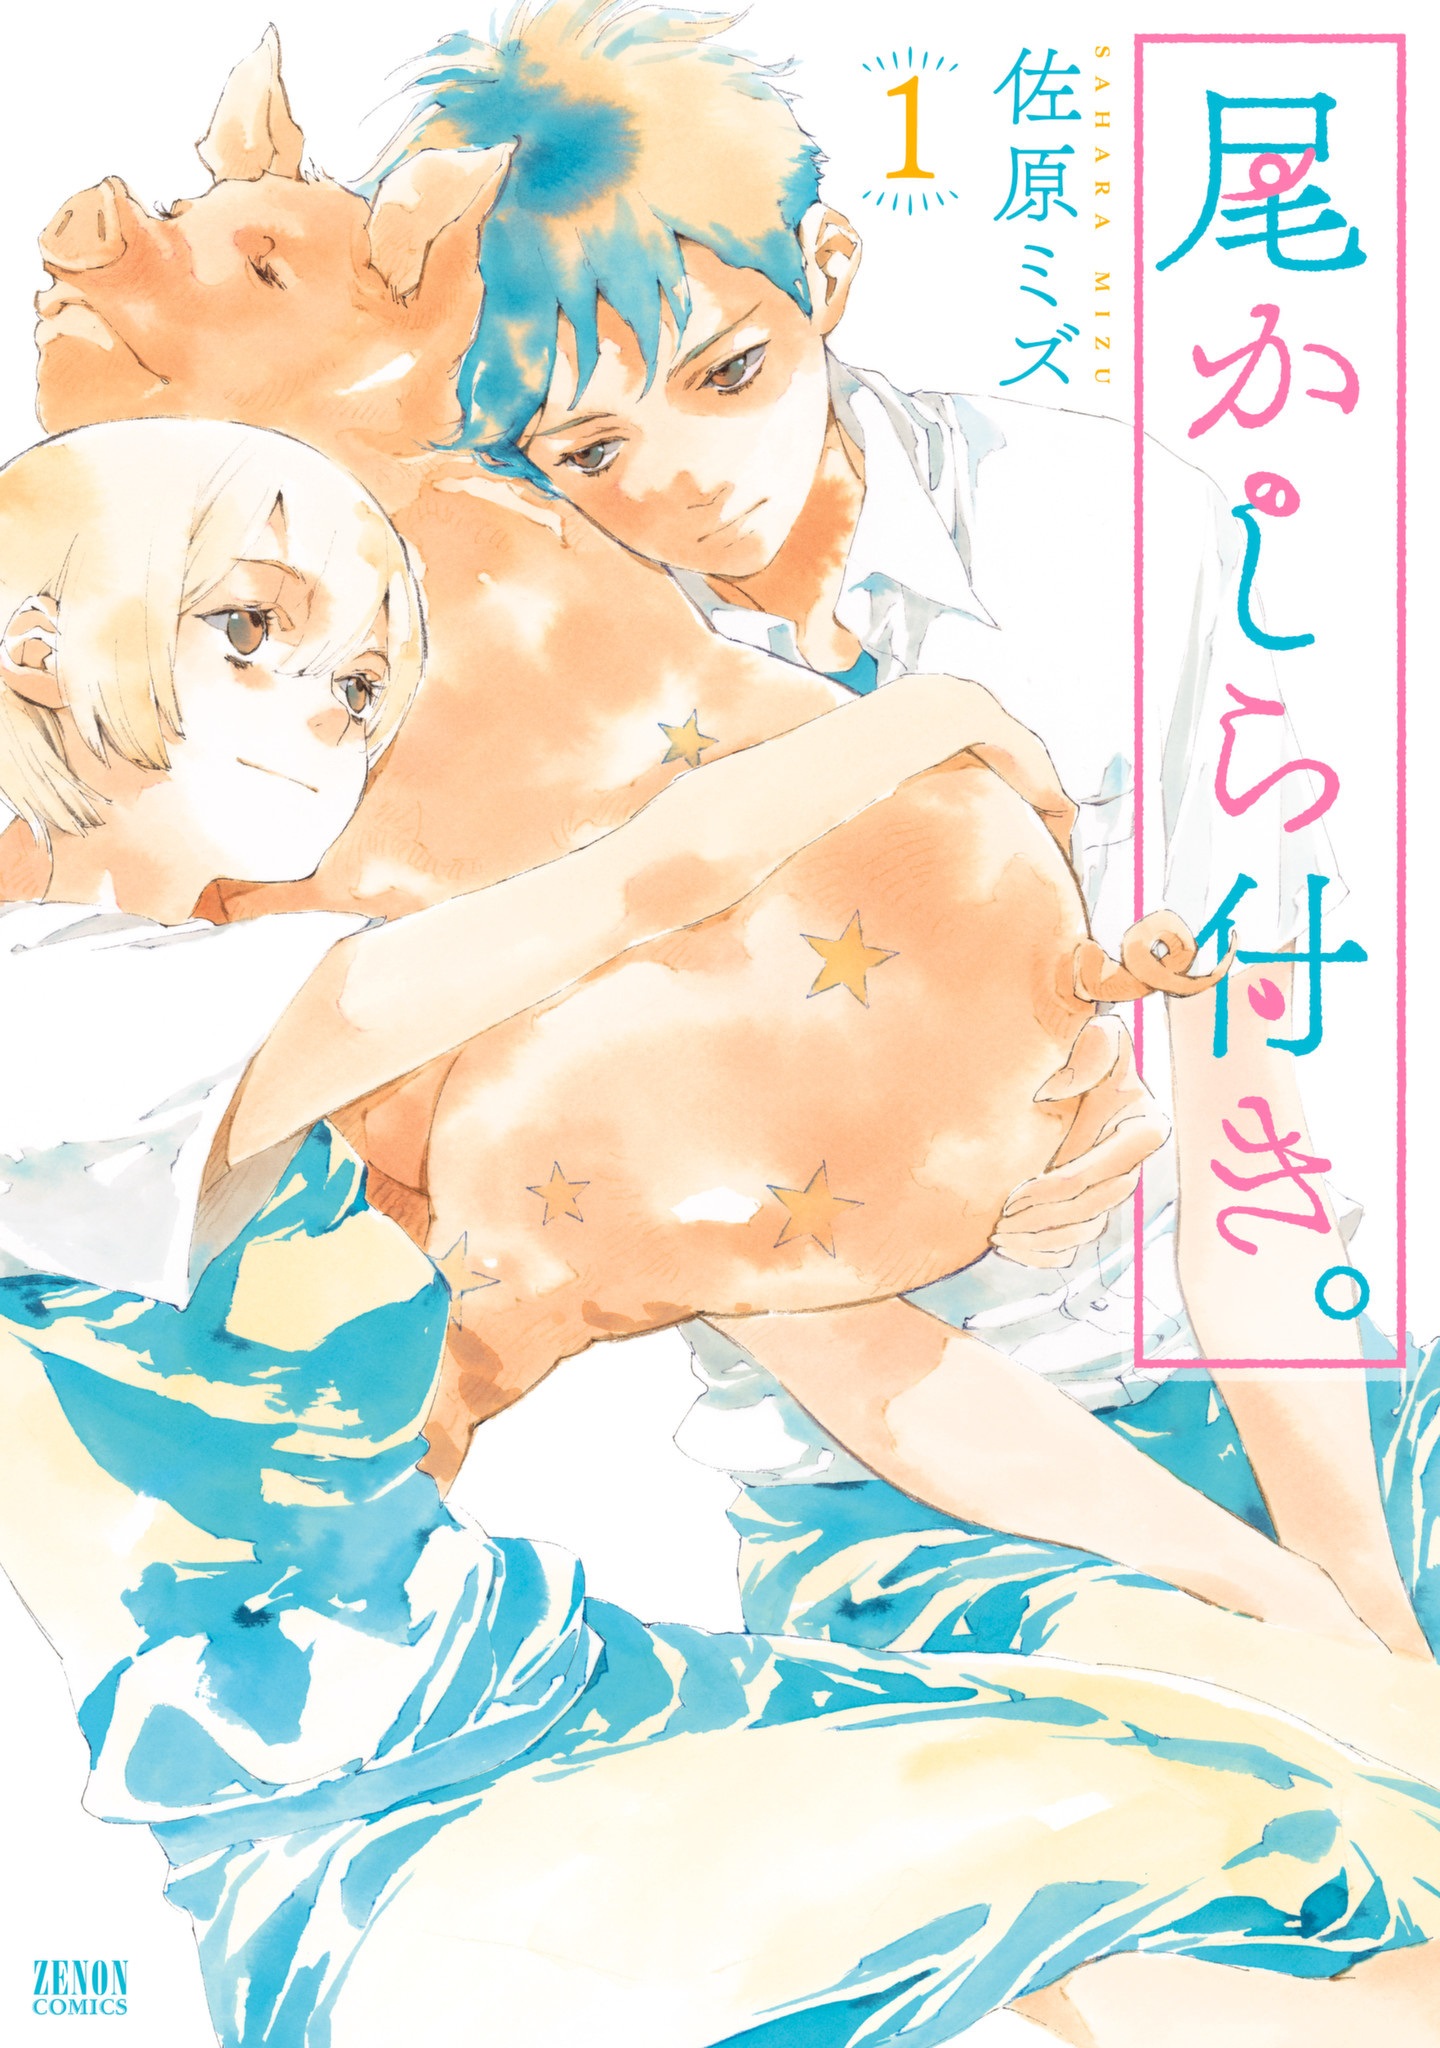 Okashiratsuki cover